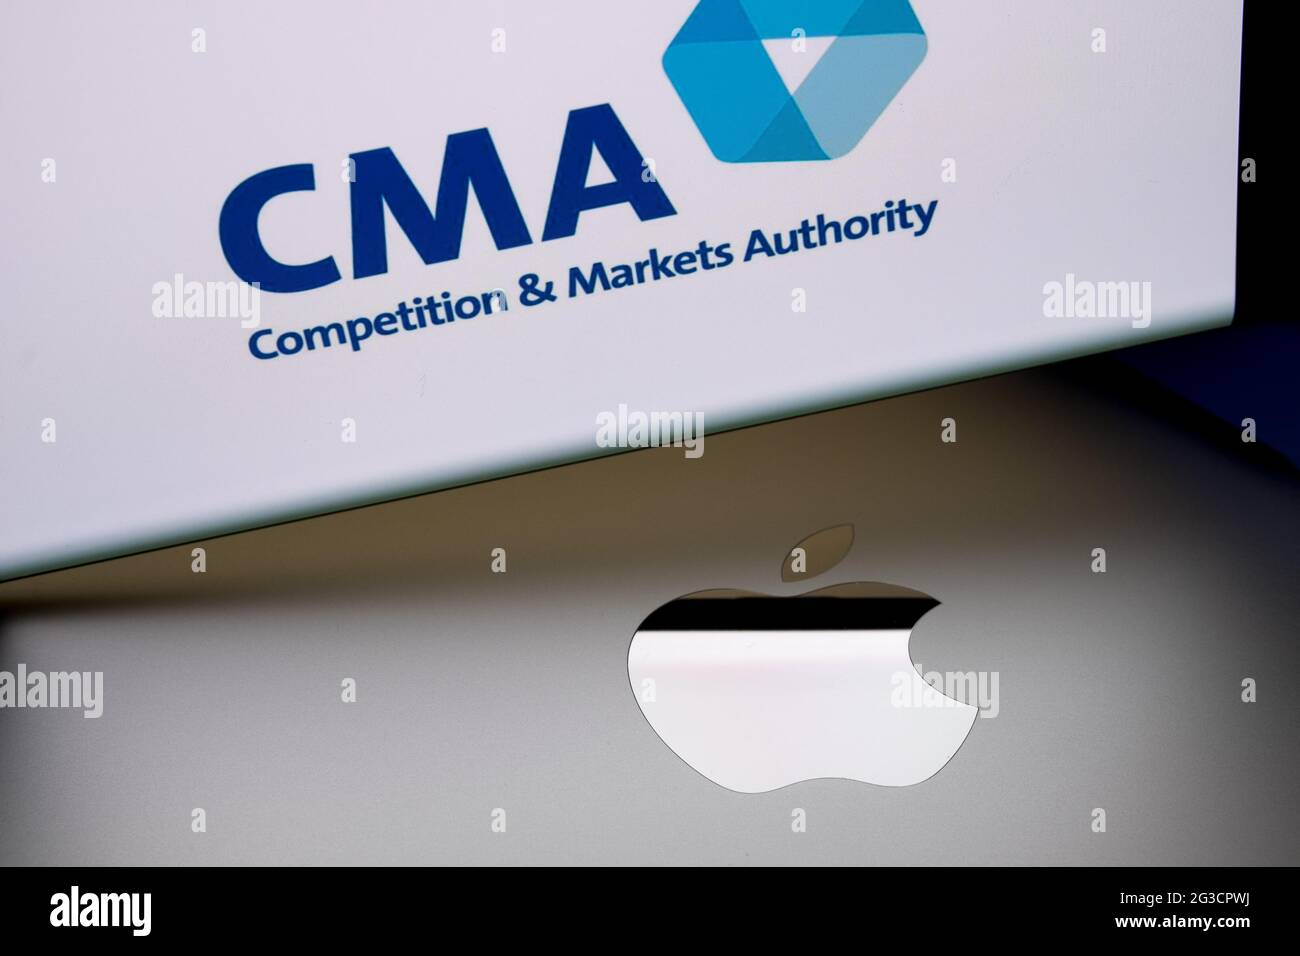 Logo Apple sulla superficie del macbook e logo del concorso CMA britannico e della Markets Authority sfocati visualizzati sullo schermo dello smartphone. Concetto. Stafford, Re Unito Foto Stock